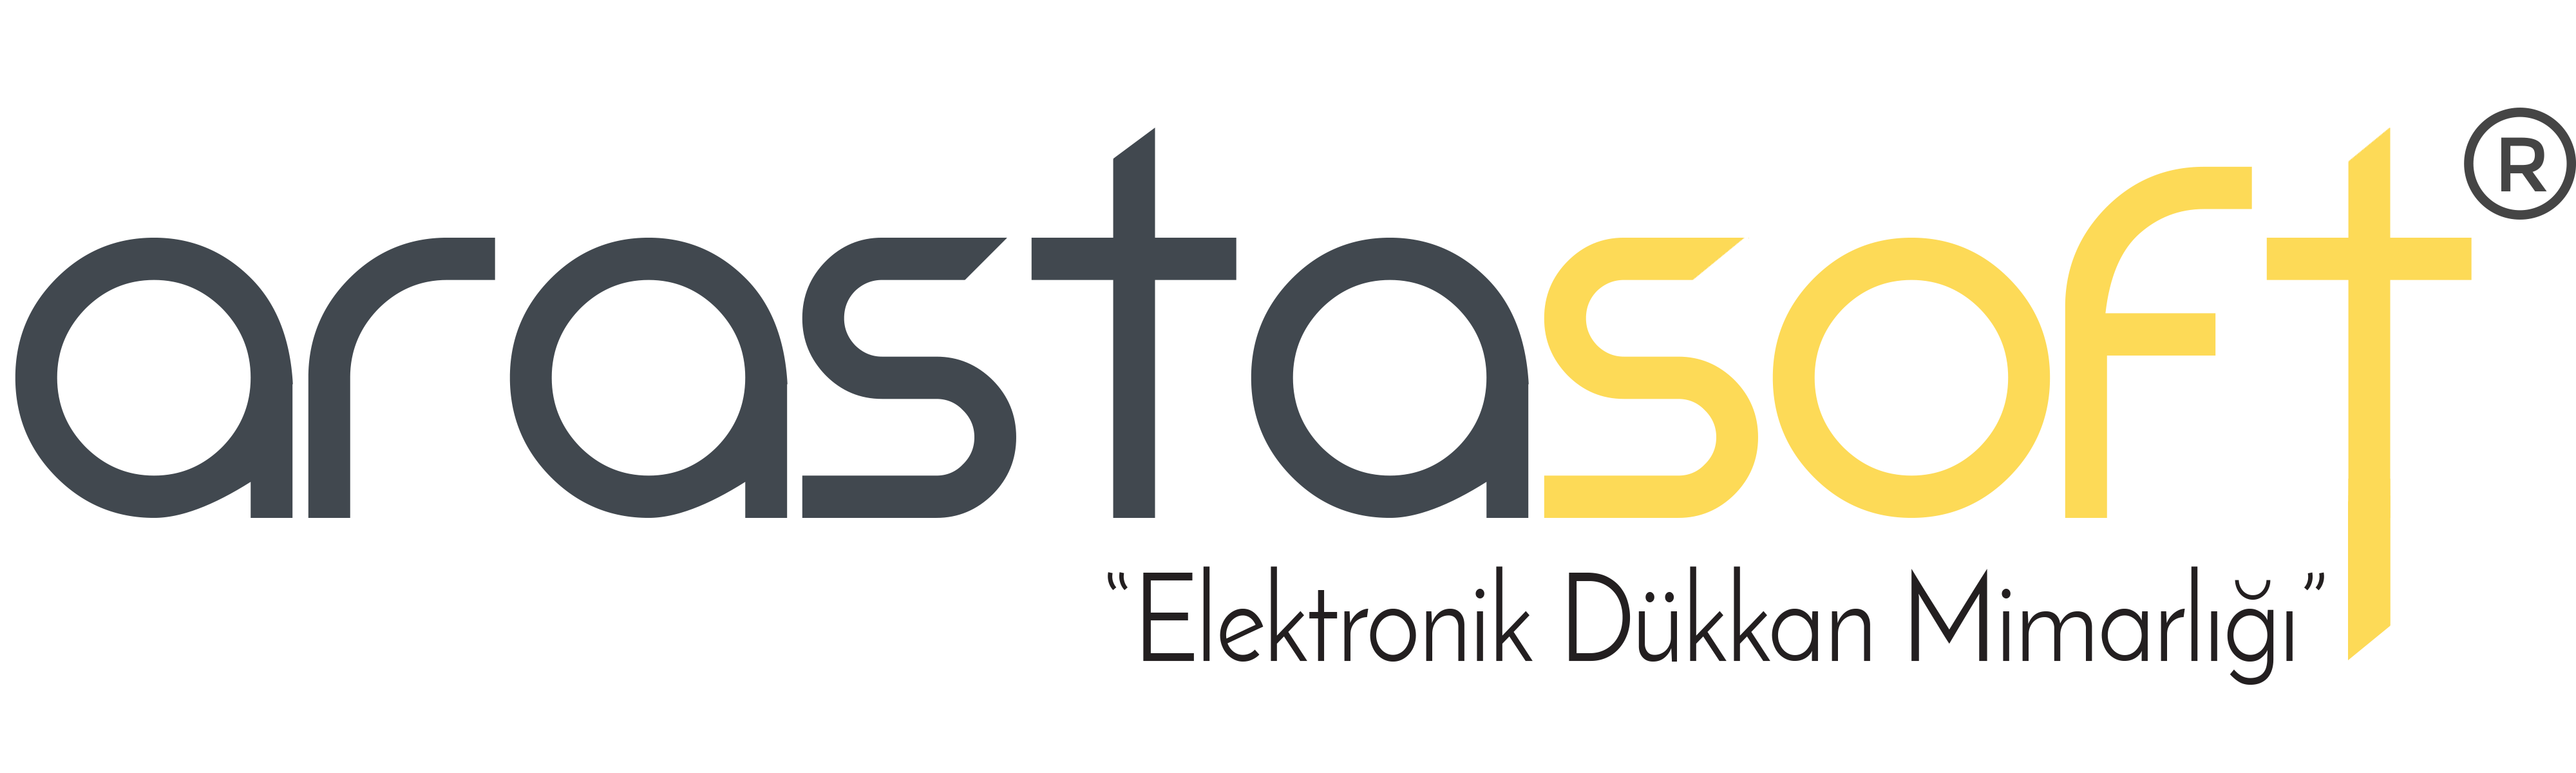 Arastasoft E-Ticaret Yazılım,Tasarım ve Danışmanlık Hizmetleri